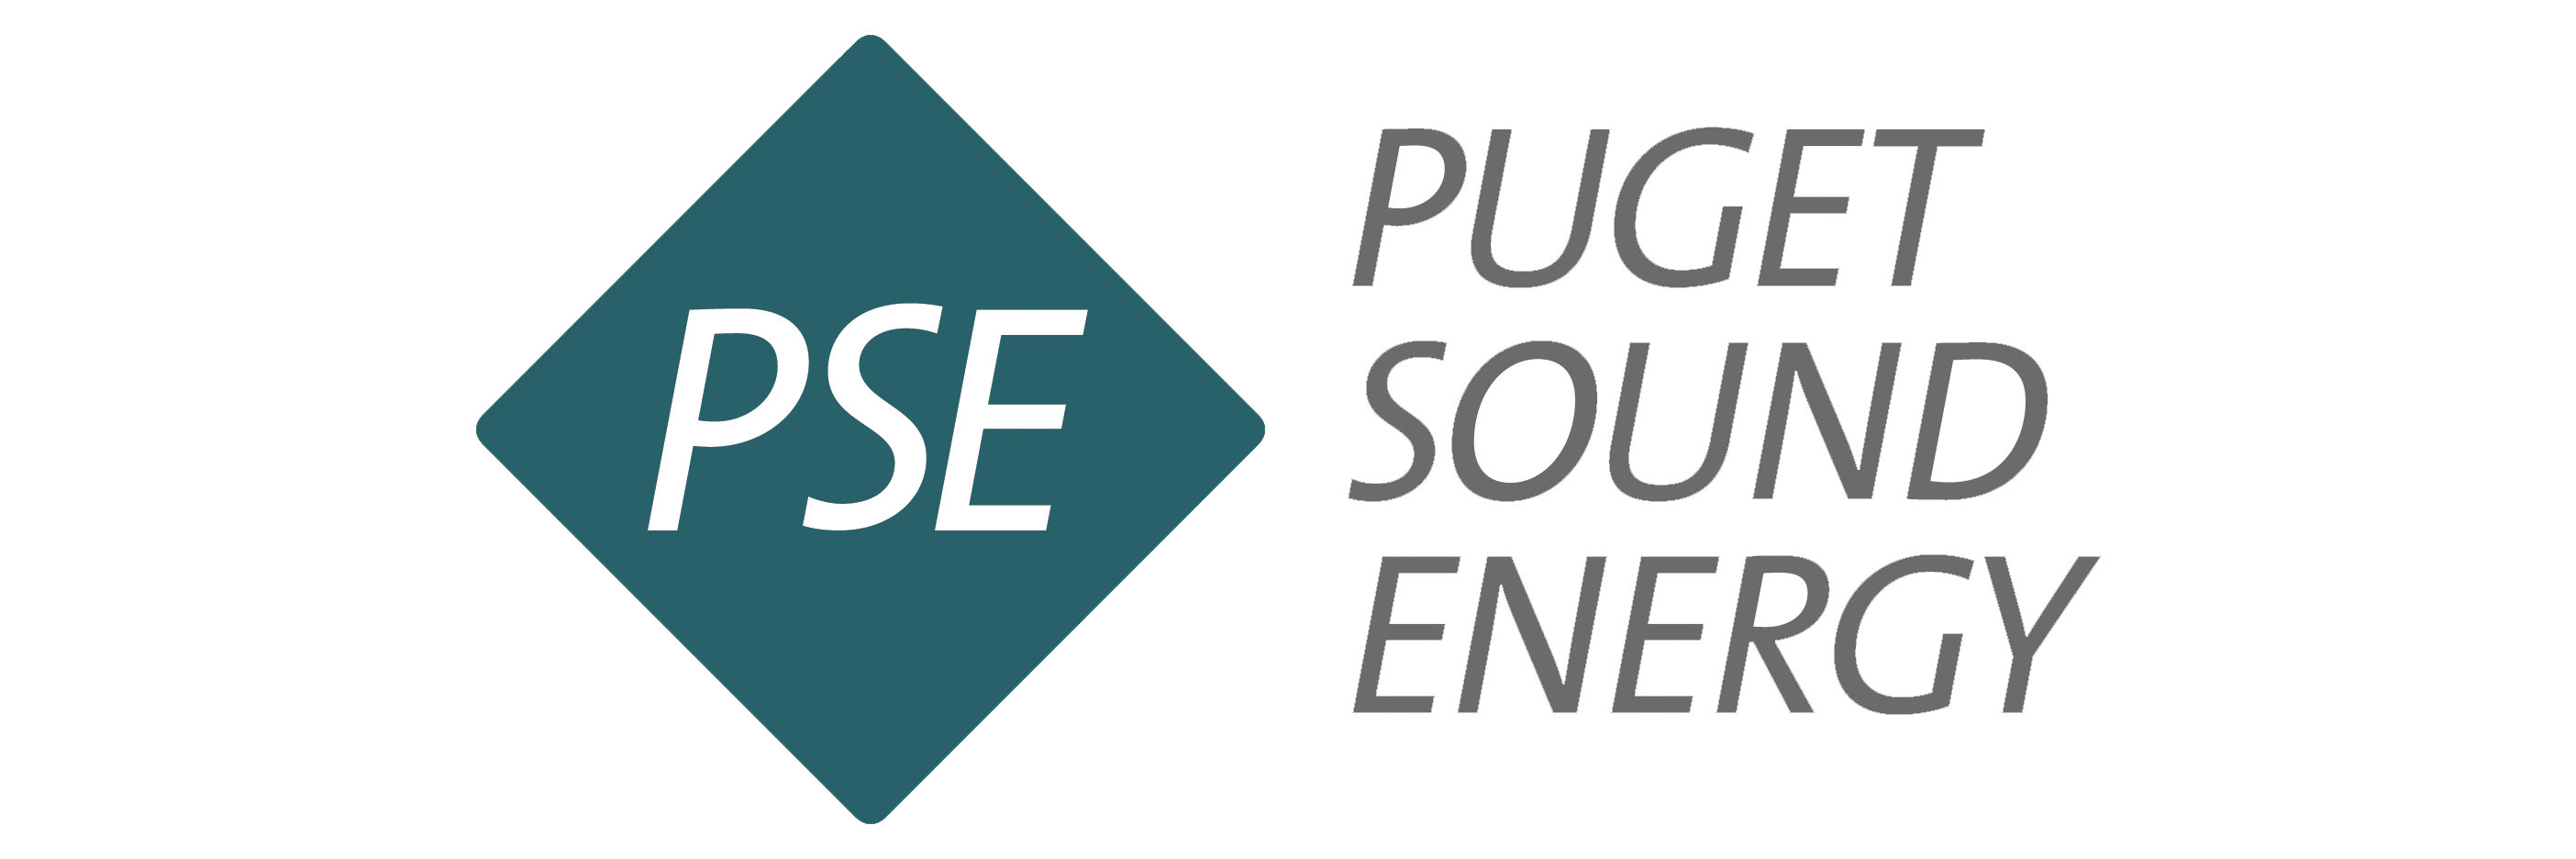 Puget Sound Energy Logo.